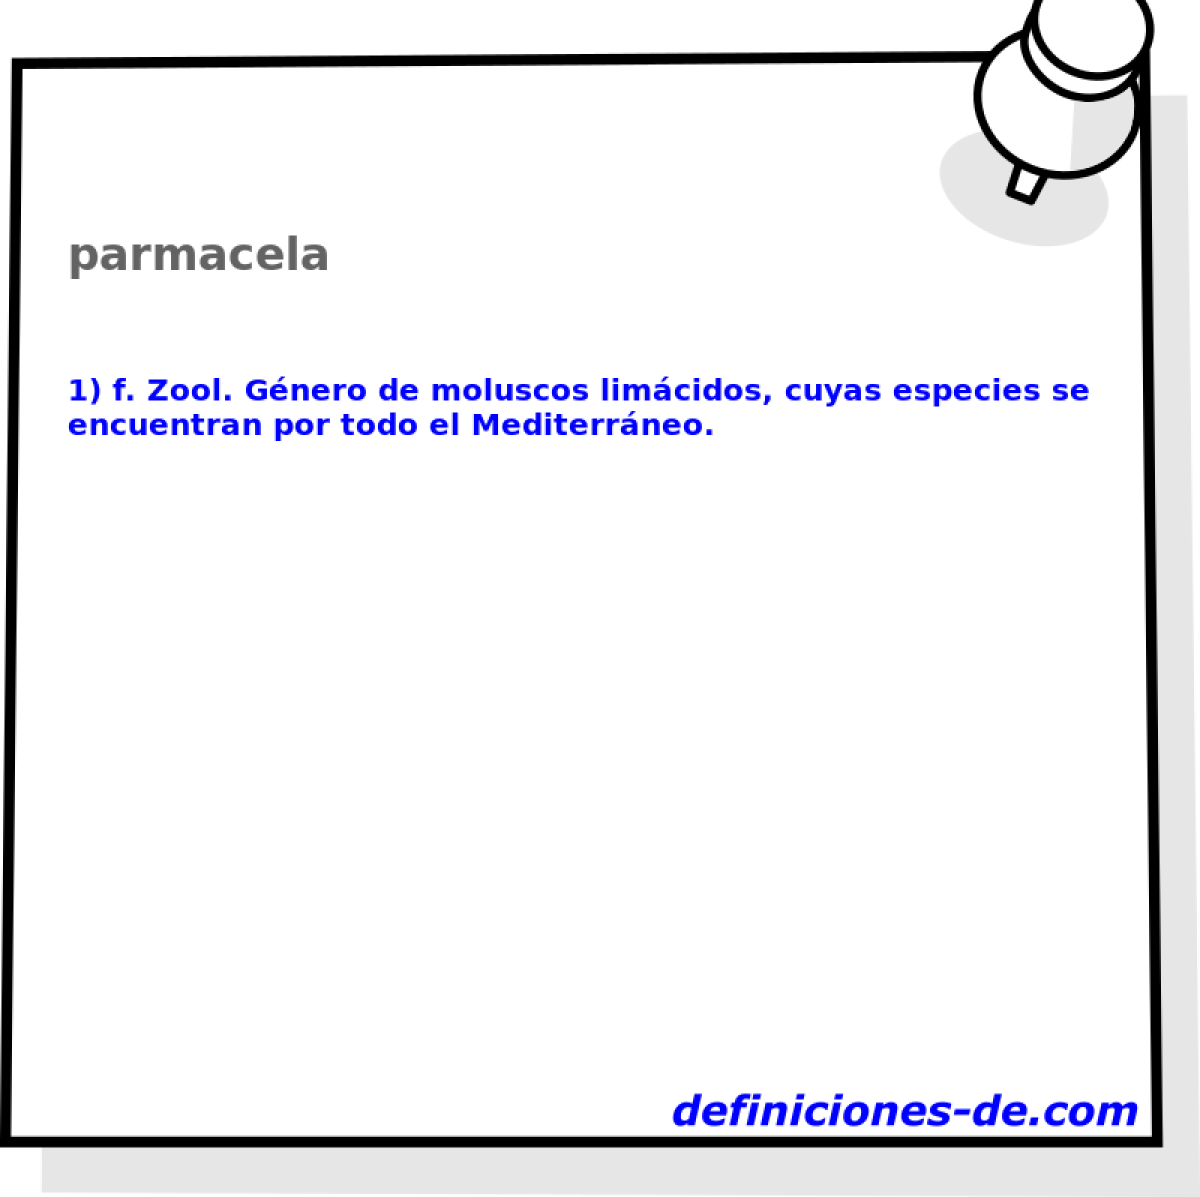 parmacela 